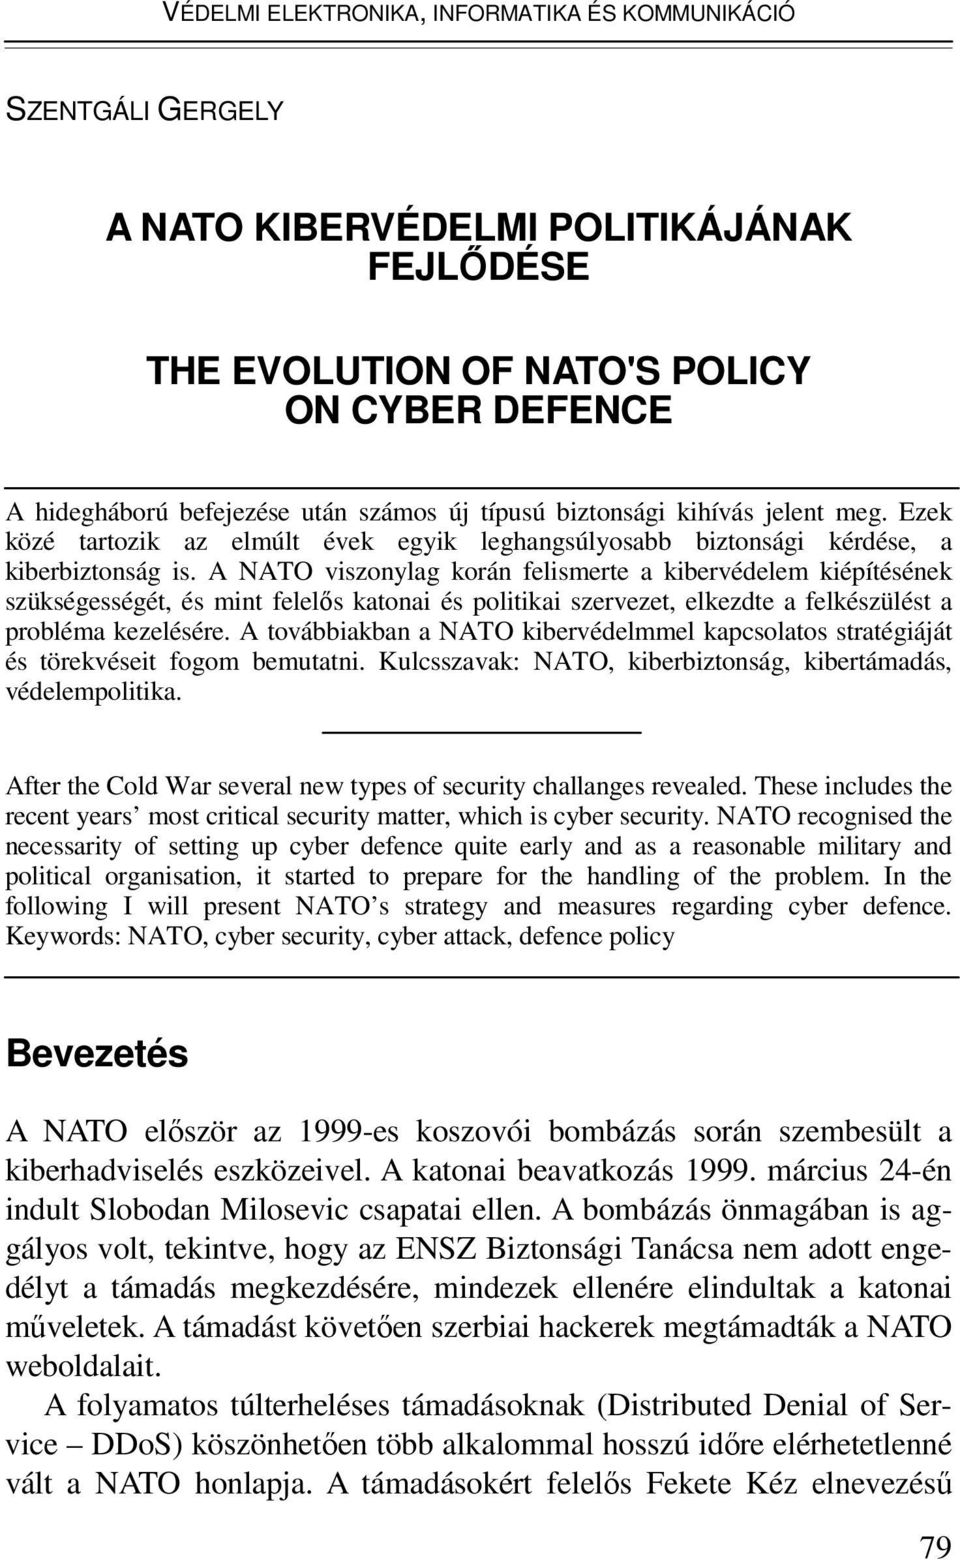 A NATO viszonylag korán felismerte a kibervédelem kiépítésének szükségességét, és mint felelős katonai és politikai szervezet, elkezdte a felkészülést a probléma kezelésére.